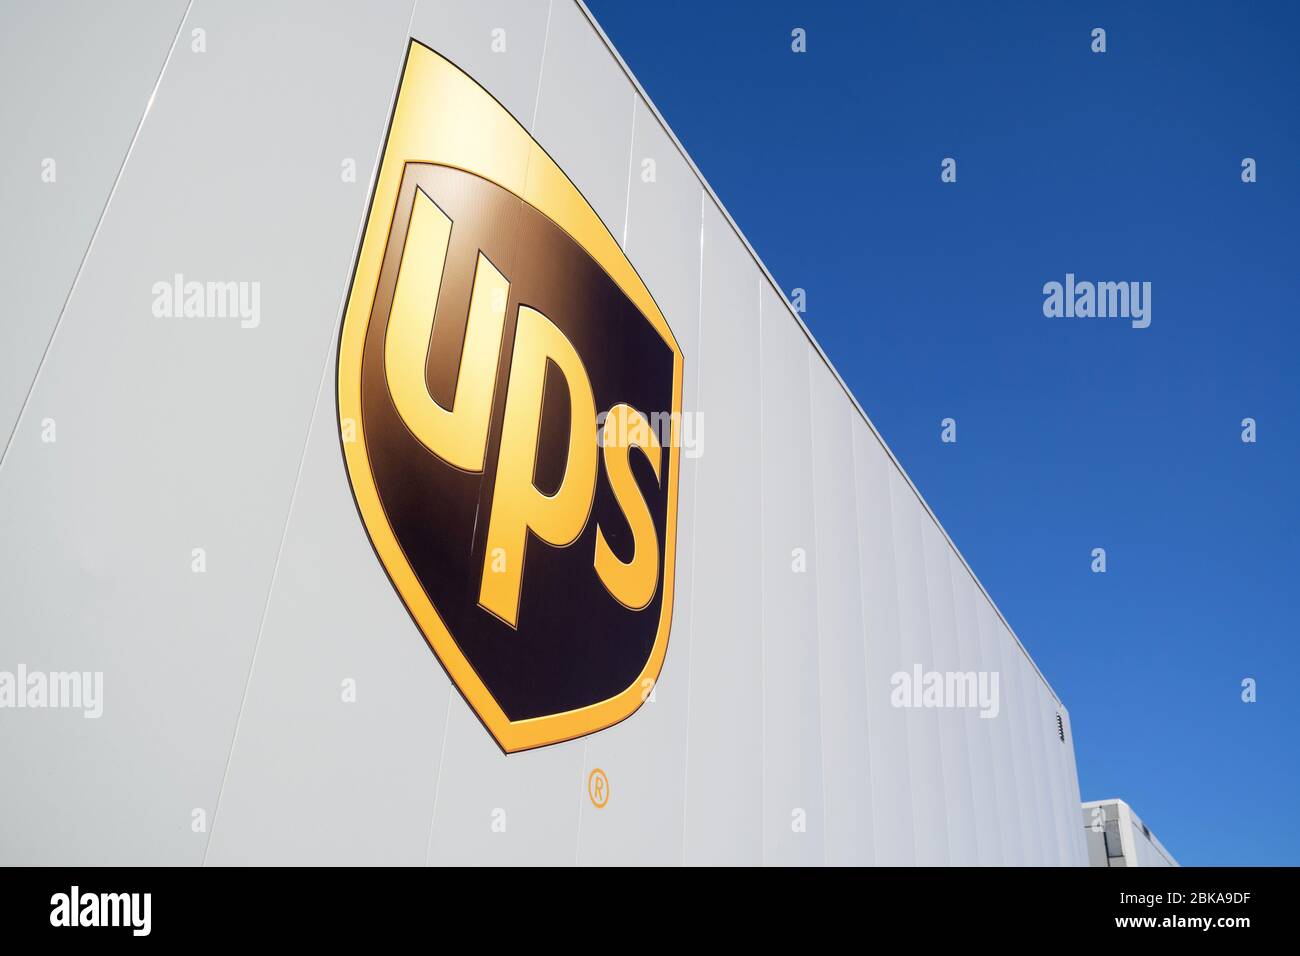 USV-Stapler. UPS ist der weltweit größte Paketlieferant und Anbieter von Lösungen für das Supply Chain Management. Stockfoto